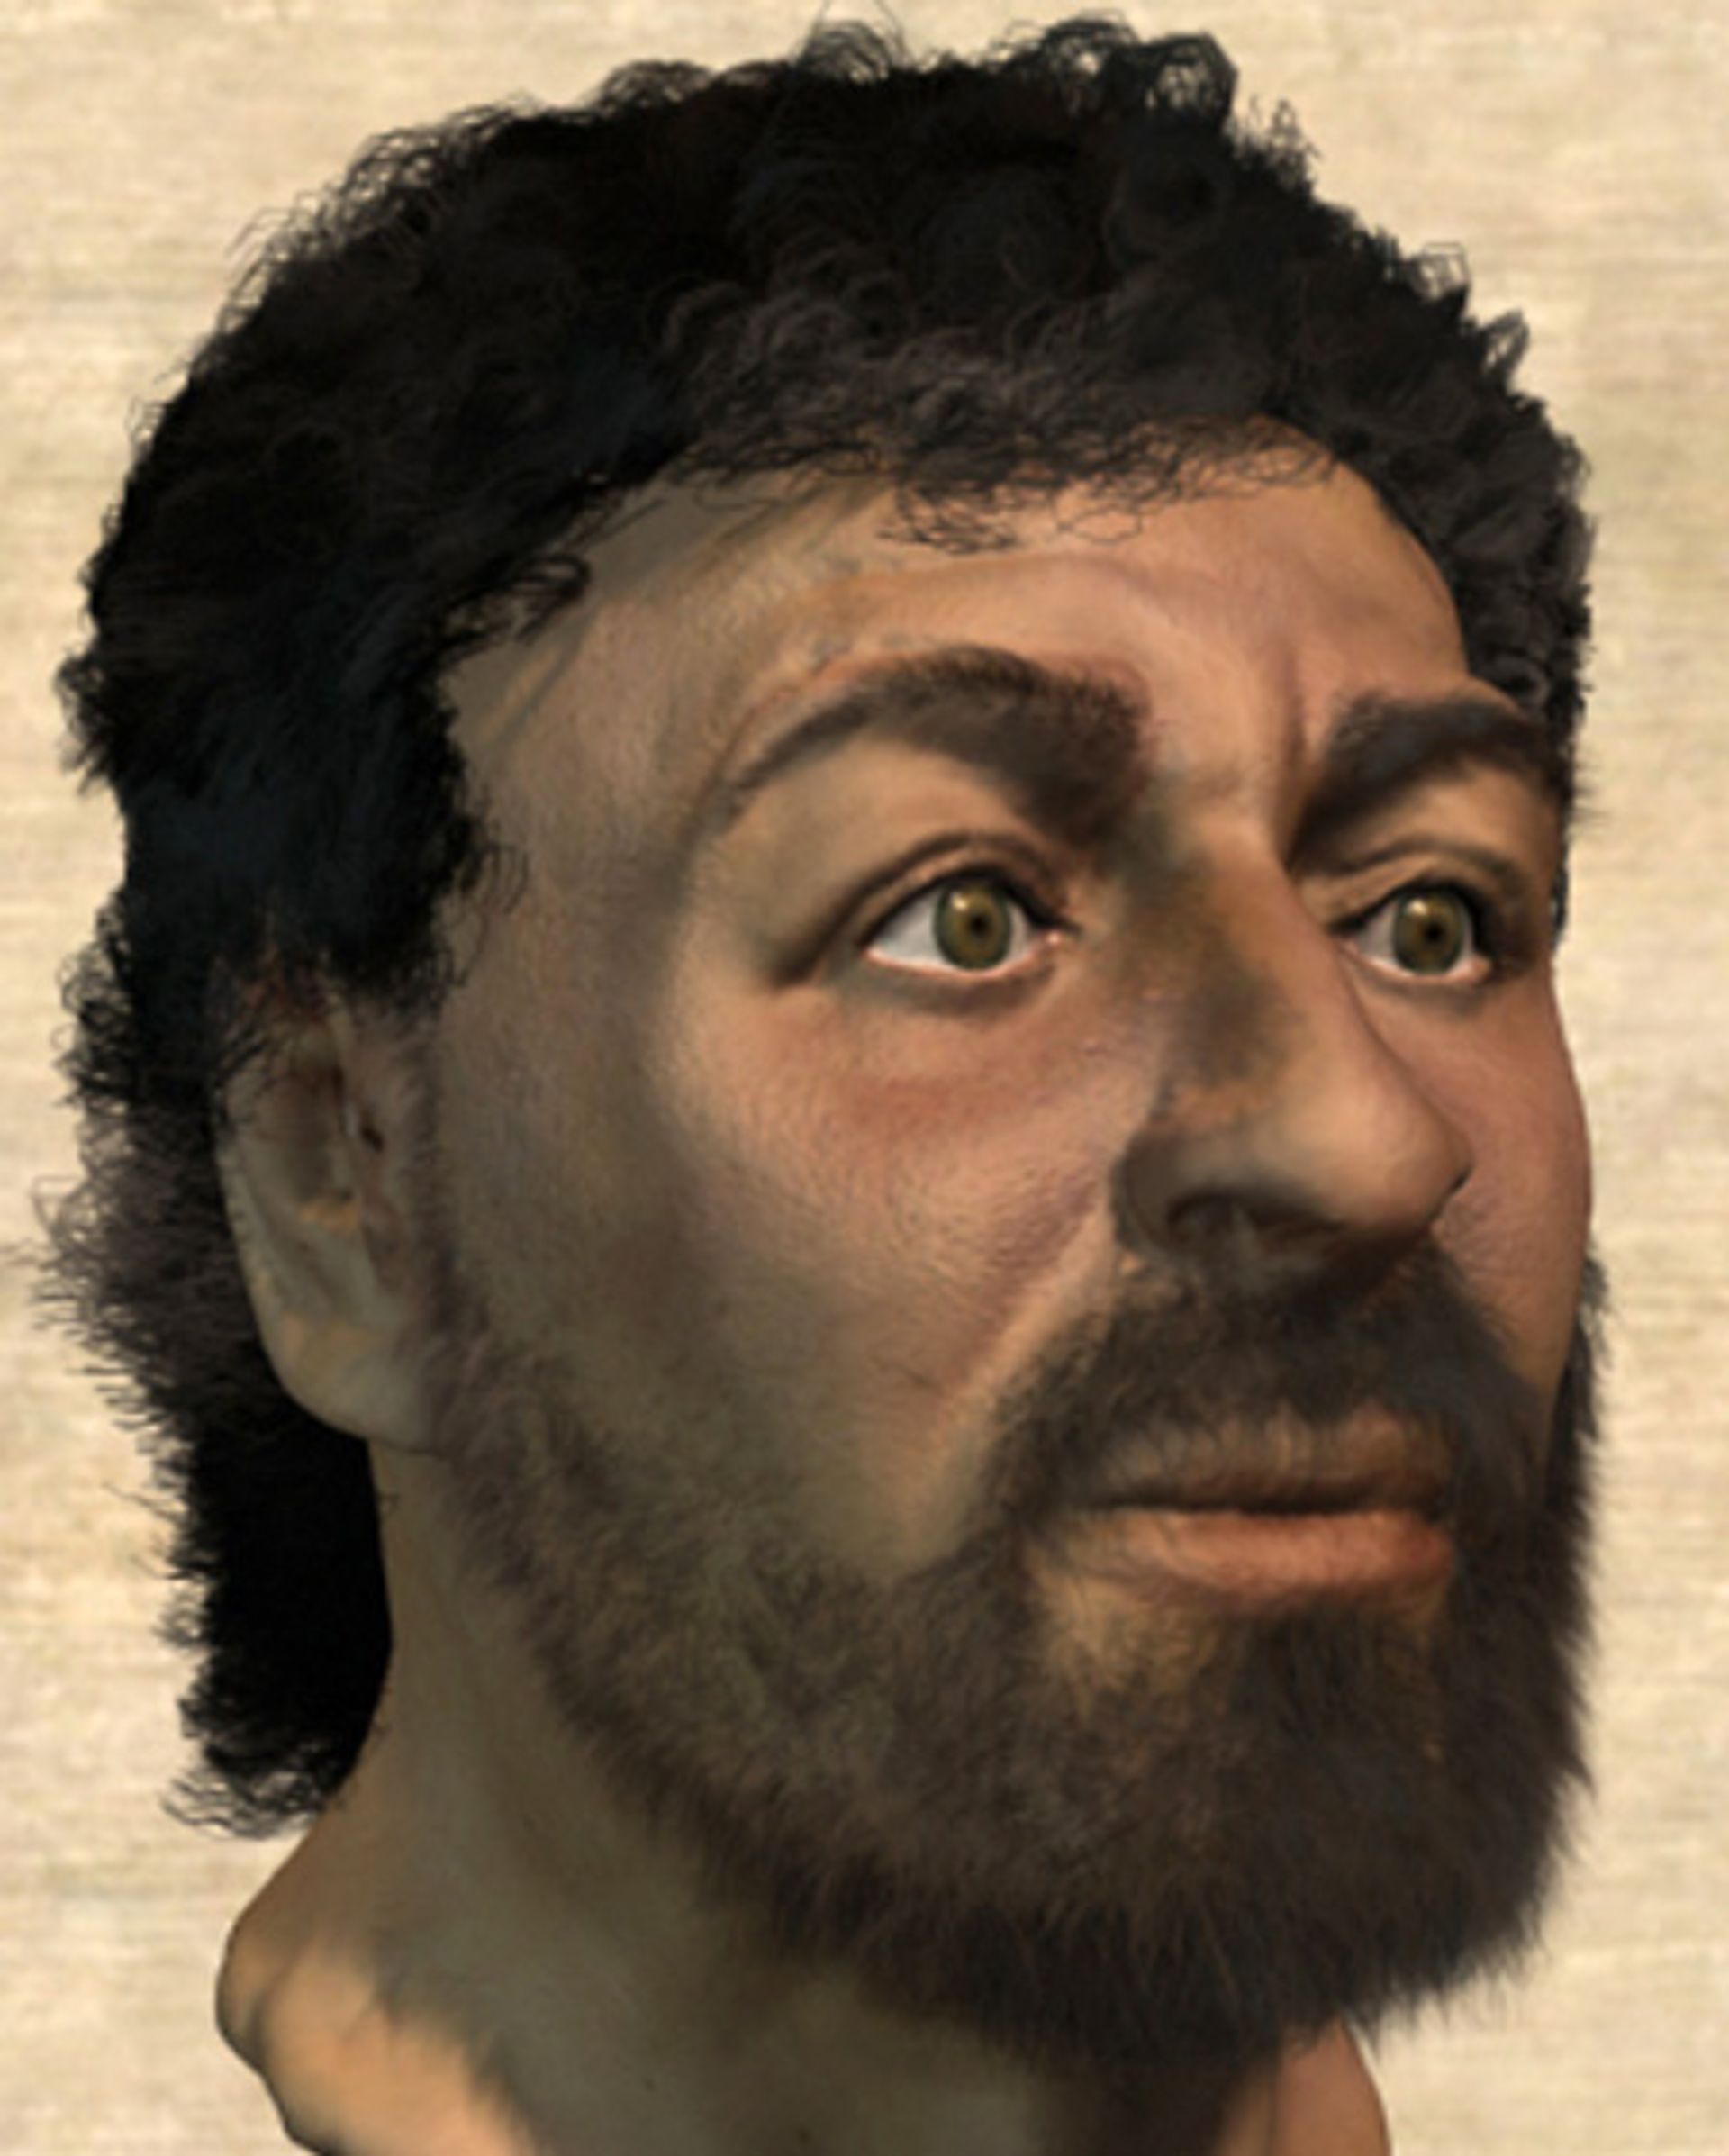 jezus-gezicht-forensisch-samengesteld